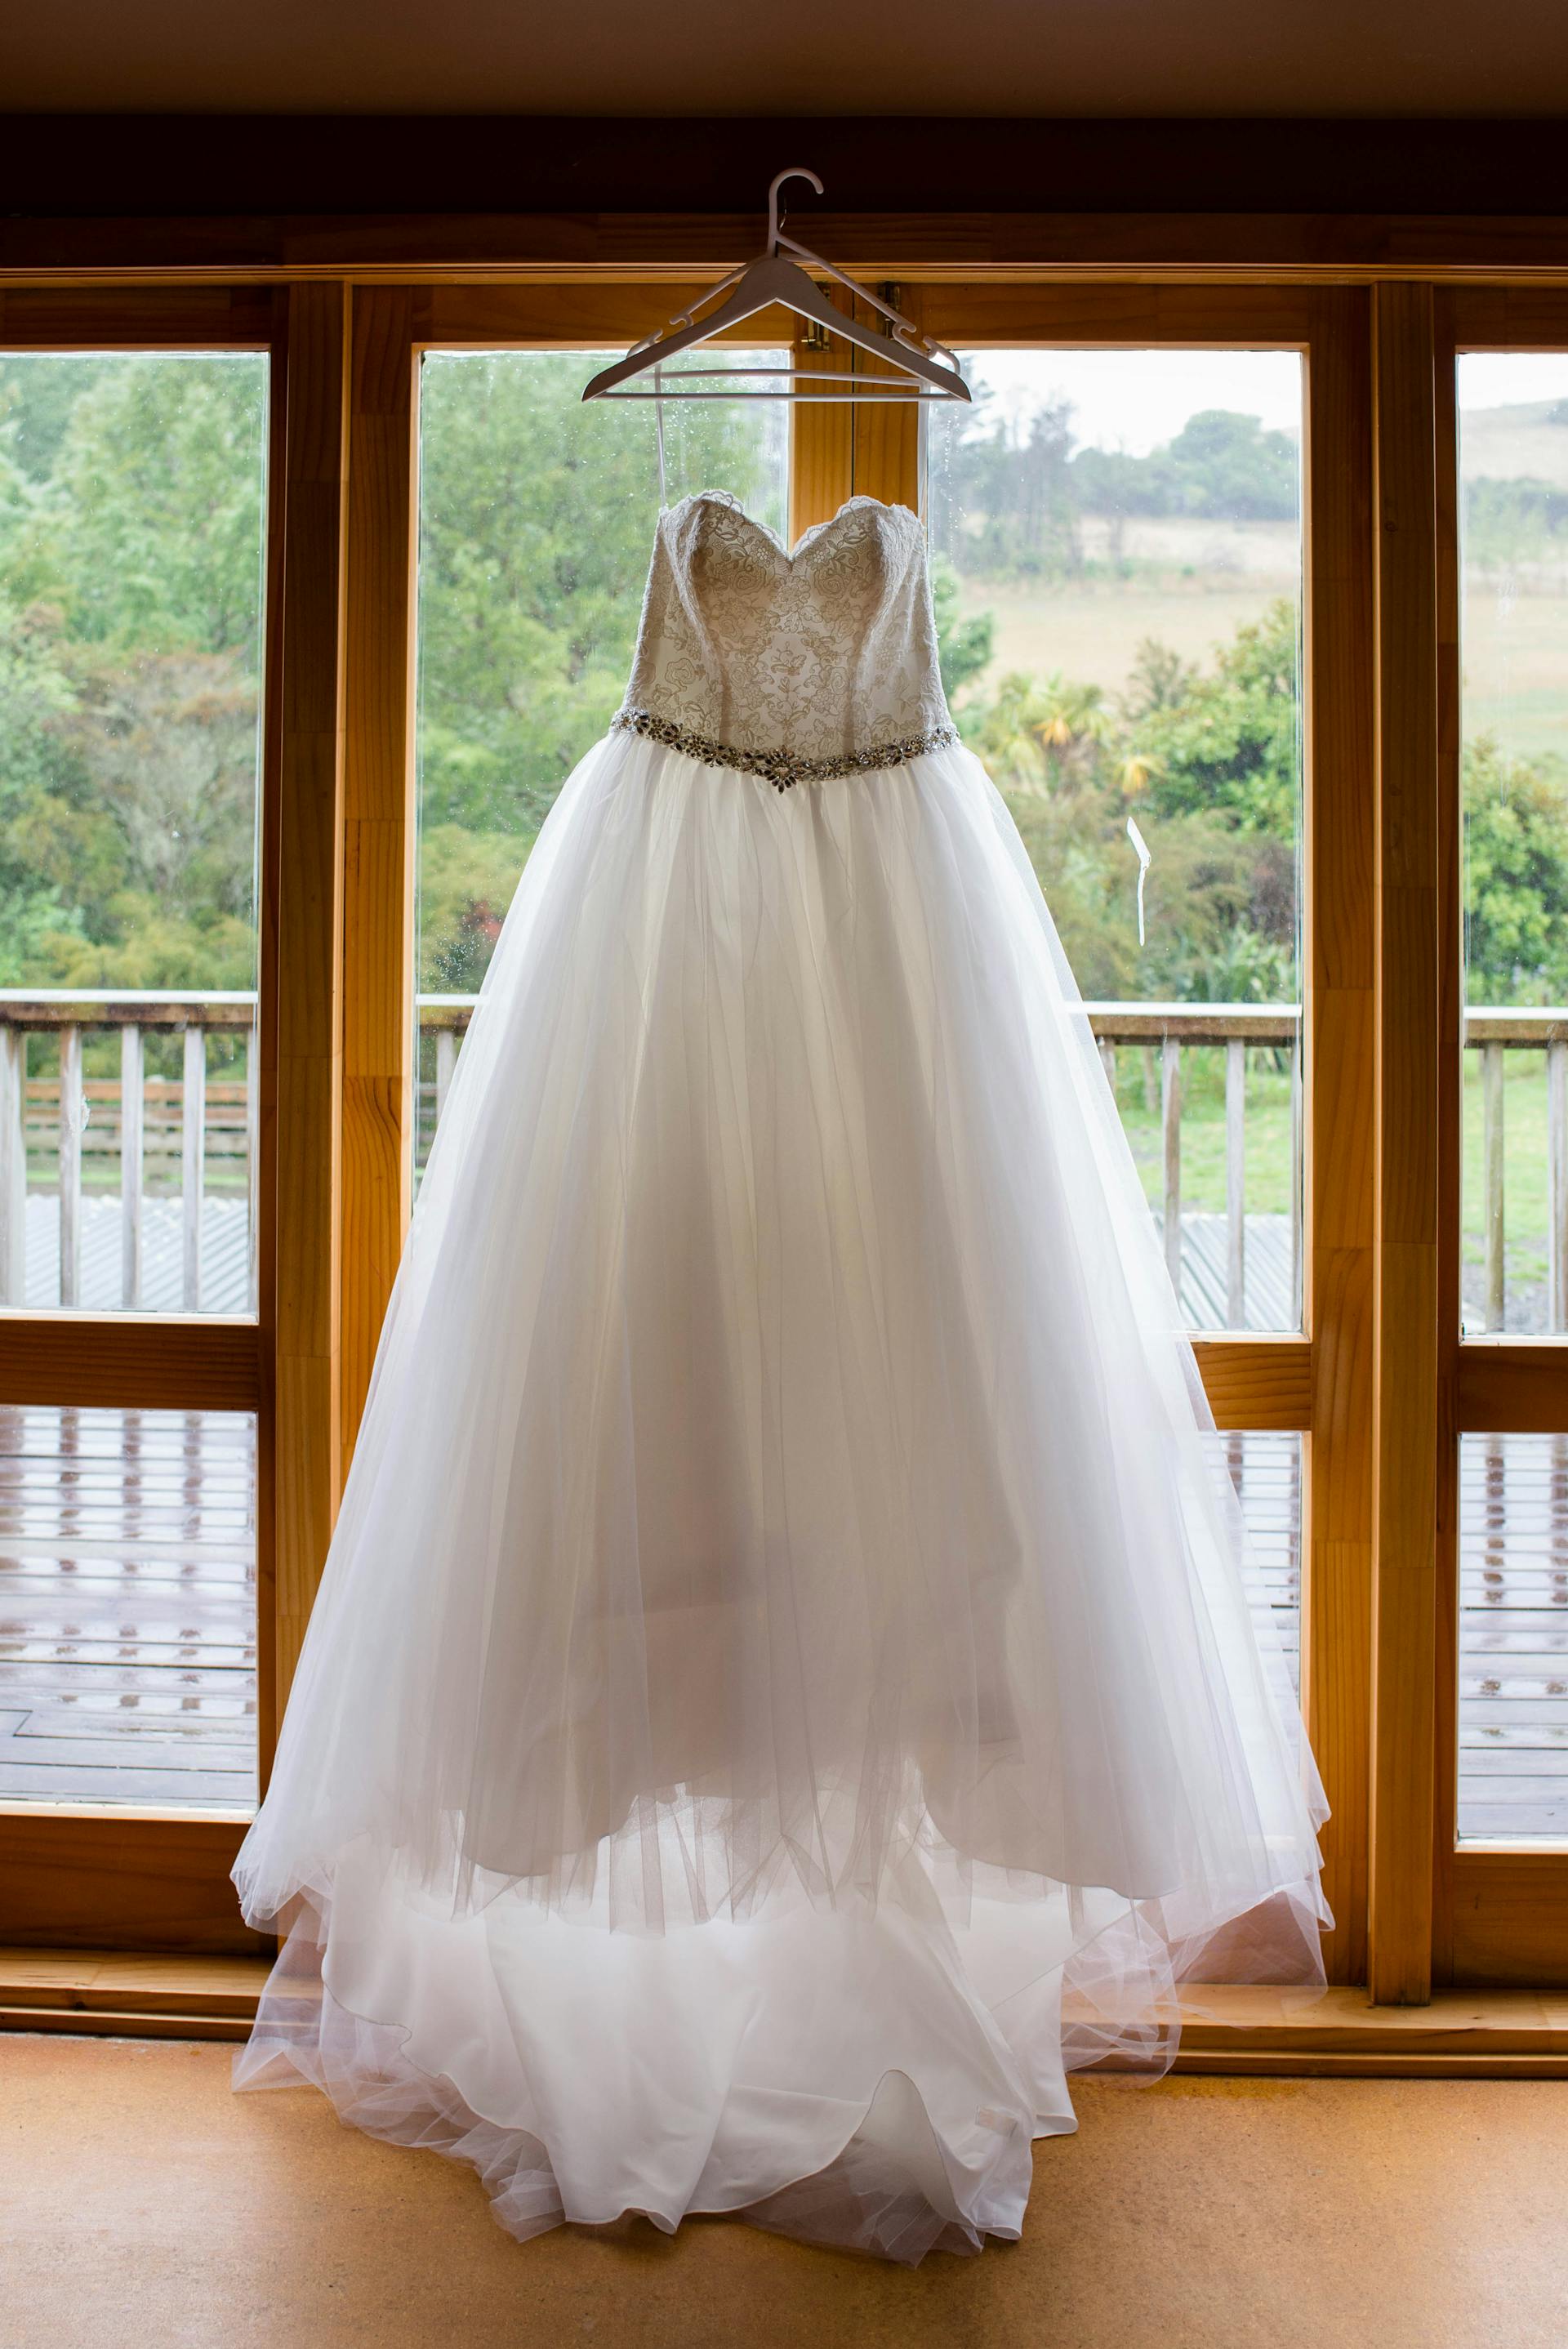 Une robe de mariée suspendue à la fenêtre | Source : Pexels